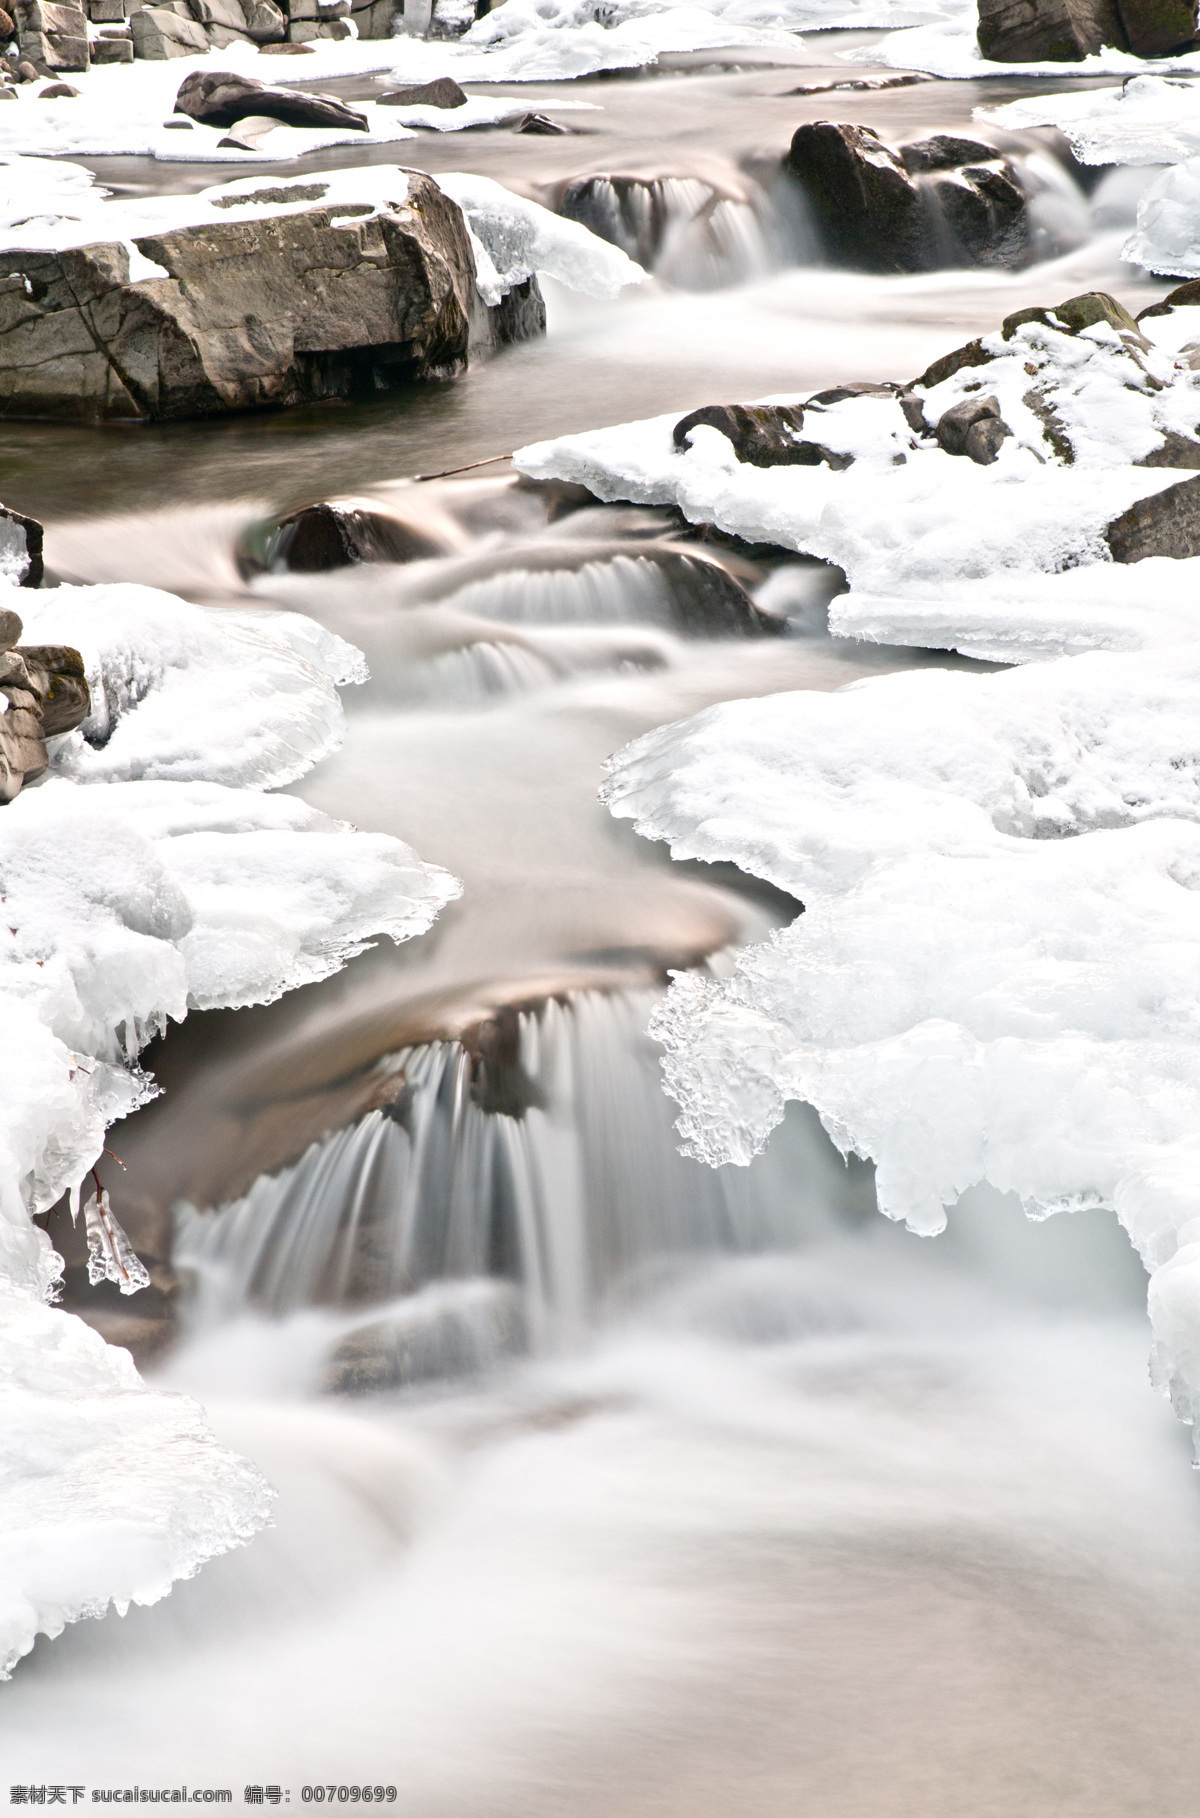 美丽 小溪 冰雪 美丽小溪风景 小溪流水 水流 冰雪融化 冰凌 冰块 春天的白雪 山水风景 风景图片